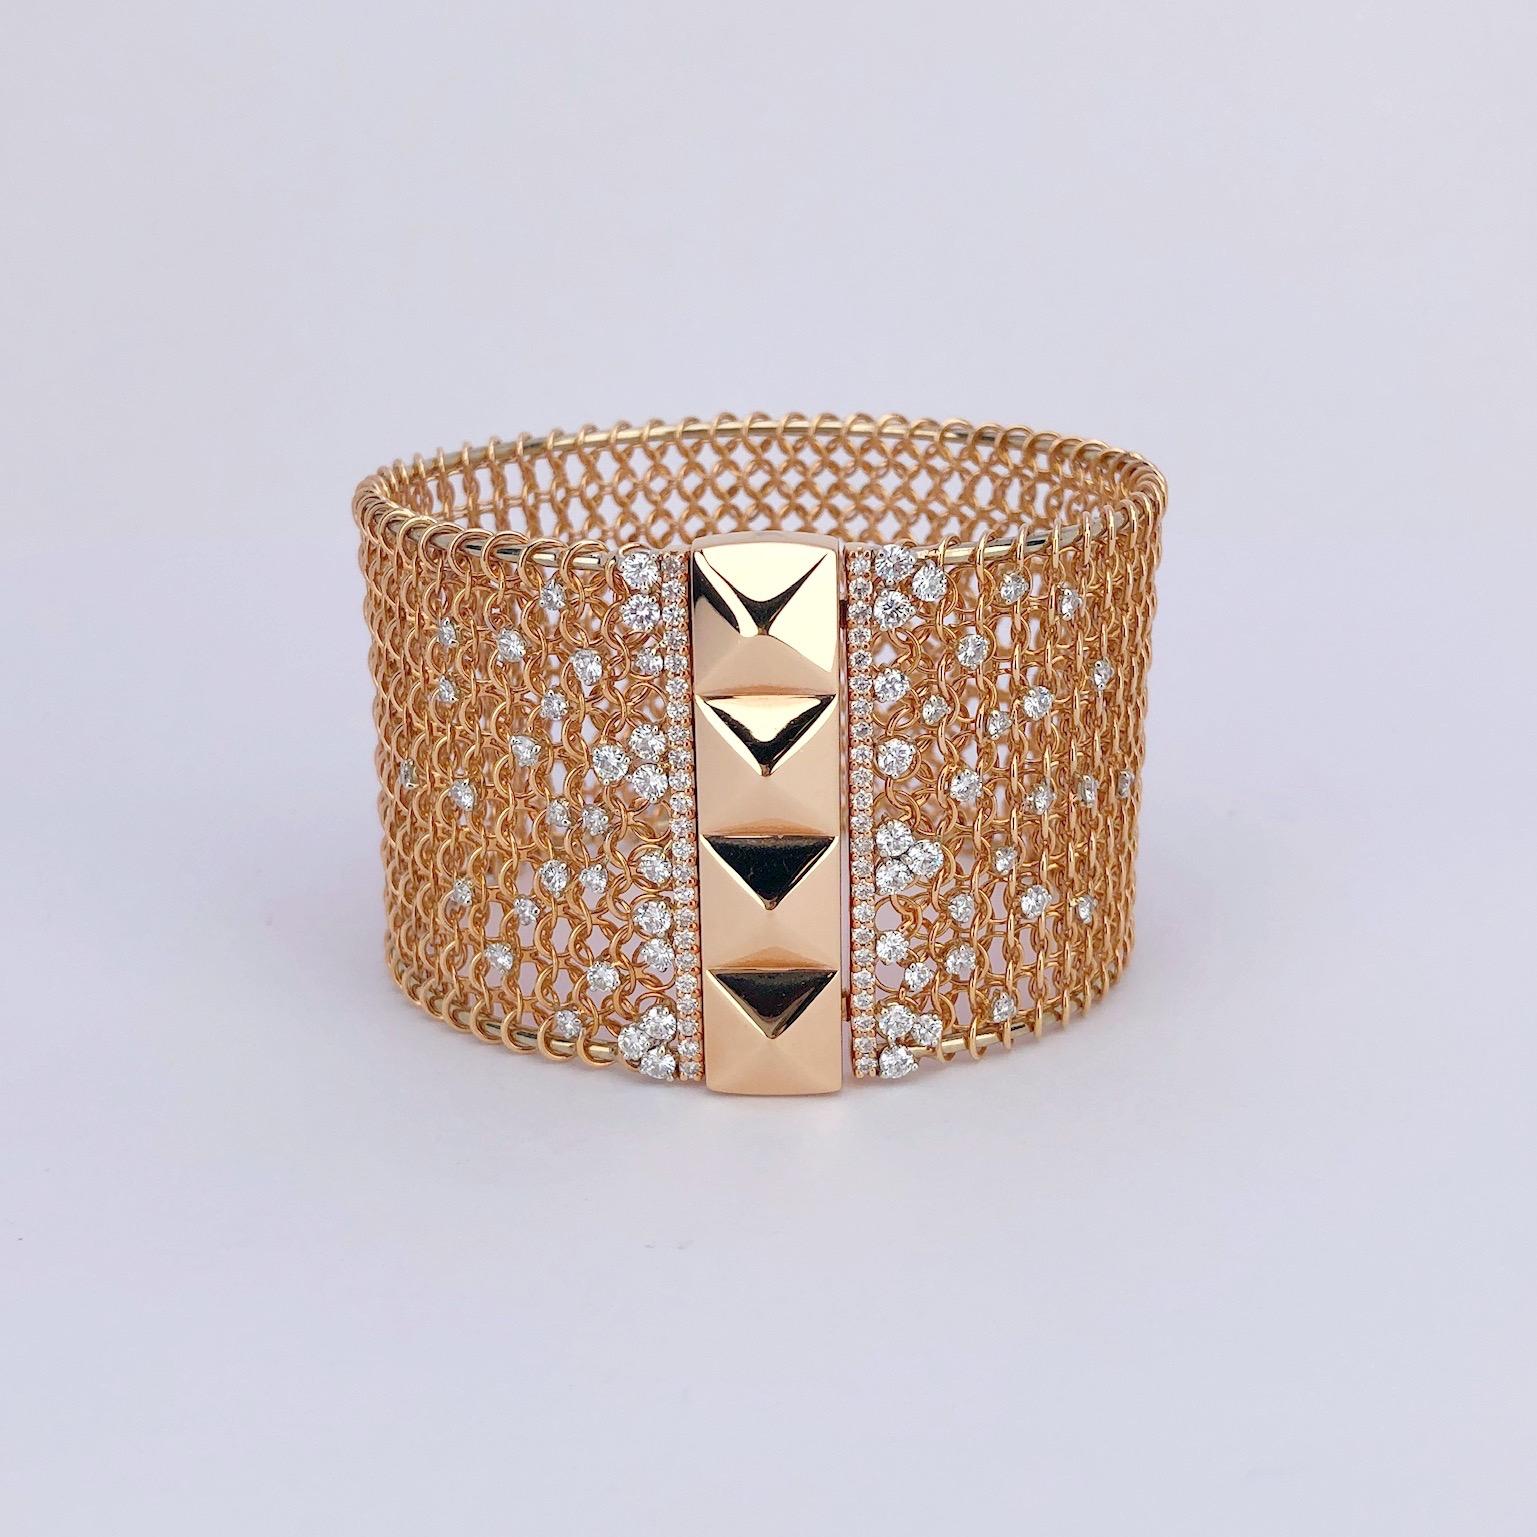 Crivelli 18 karat rose gold wide cuff bracelet. The bracelet is designed with a hard 